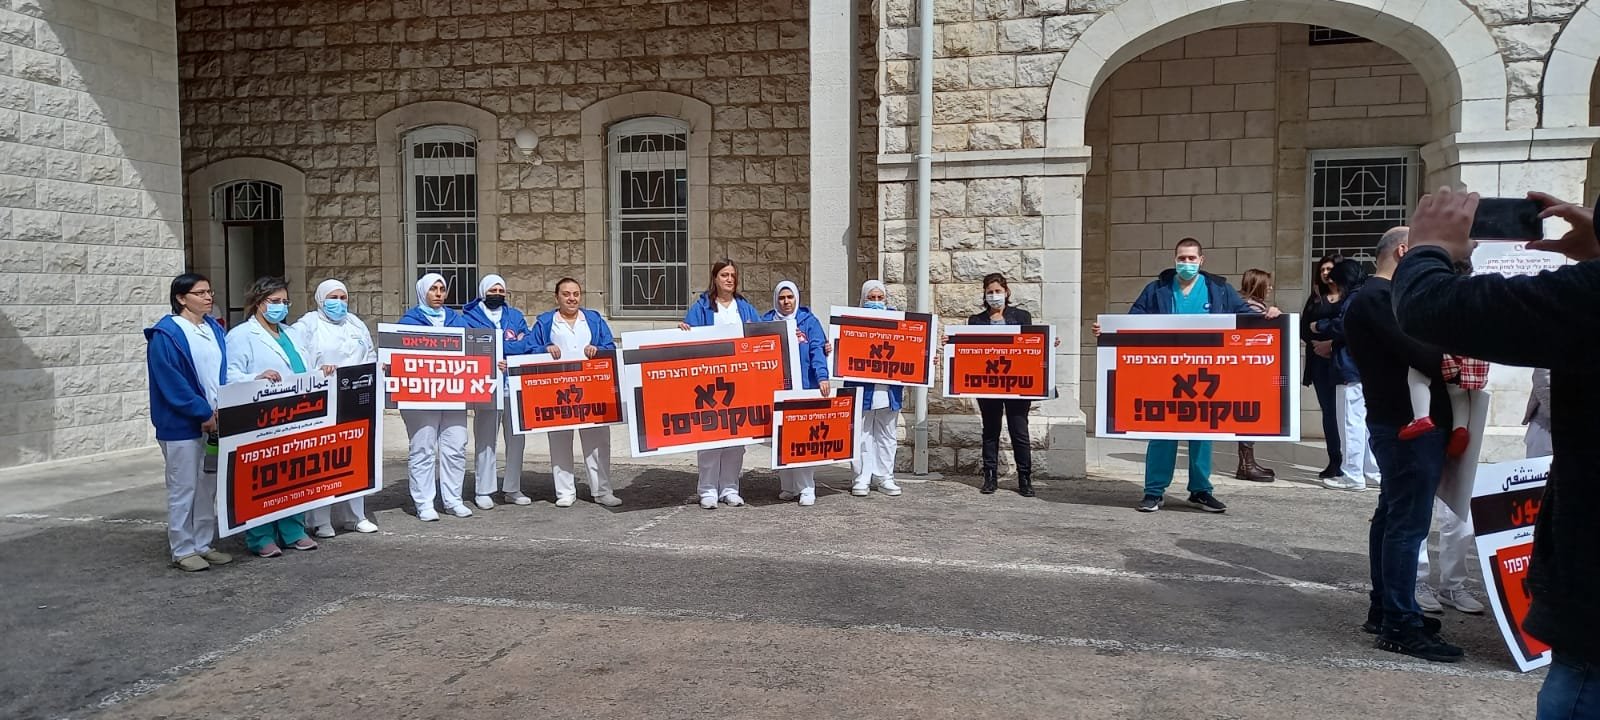 الناصرة: موظفو المستشفى الفرنسي يحتجون في وجه وزير الصحة-0